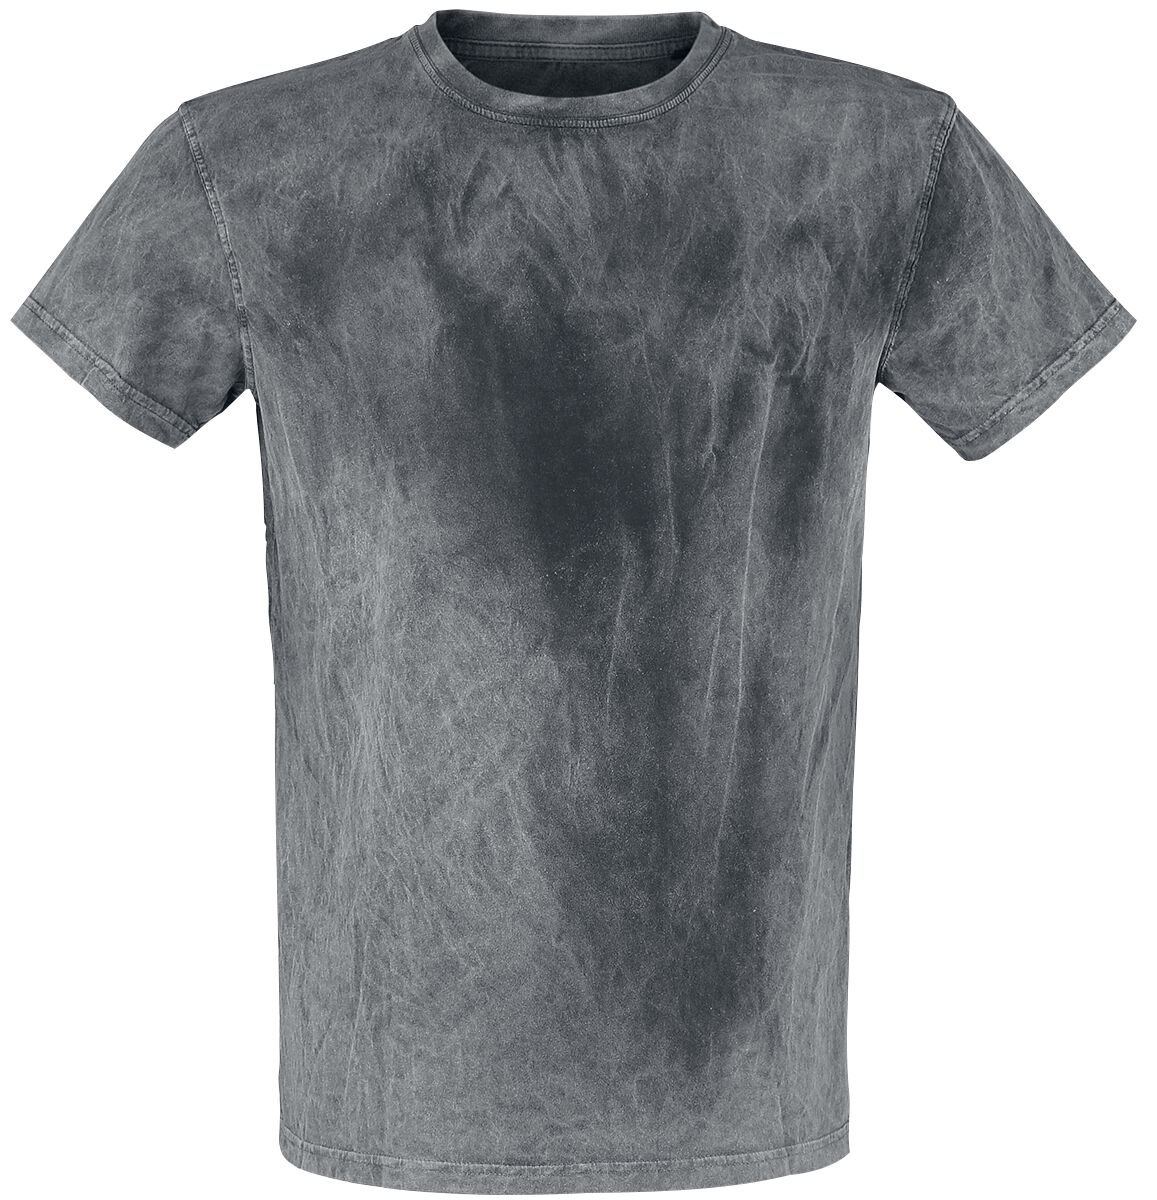 Outer Vision Man's T-Shirt T-Shirt grau in XL von Outer Vision